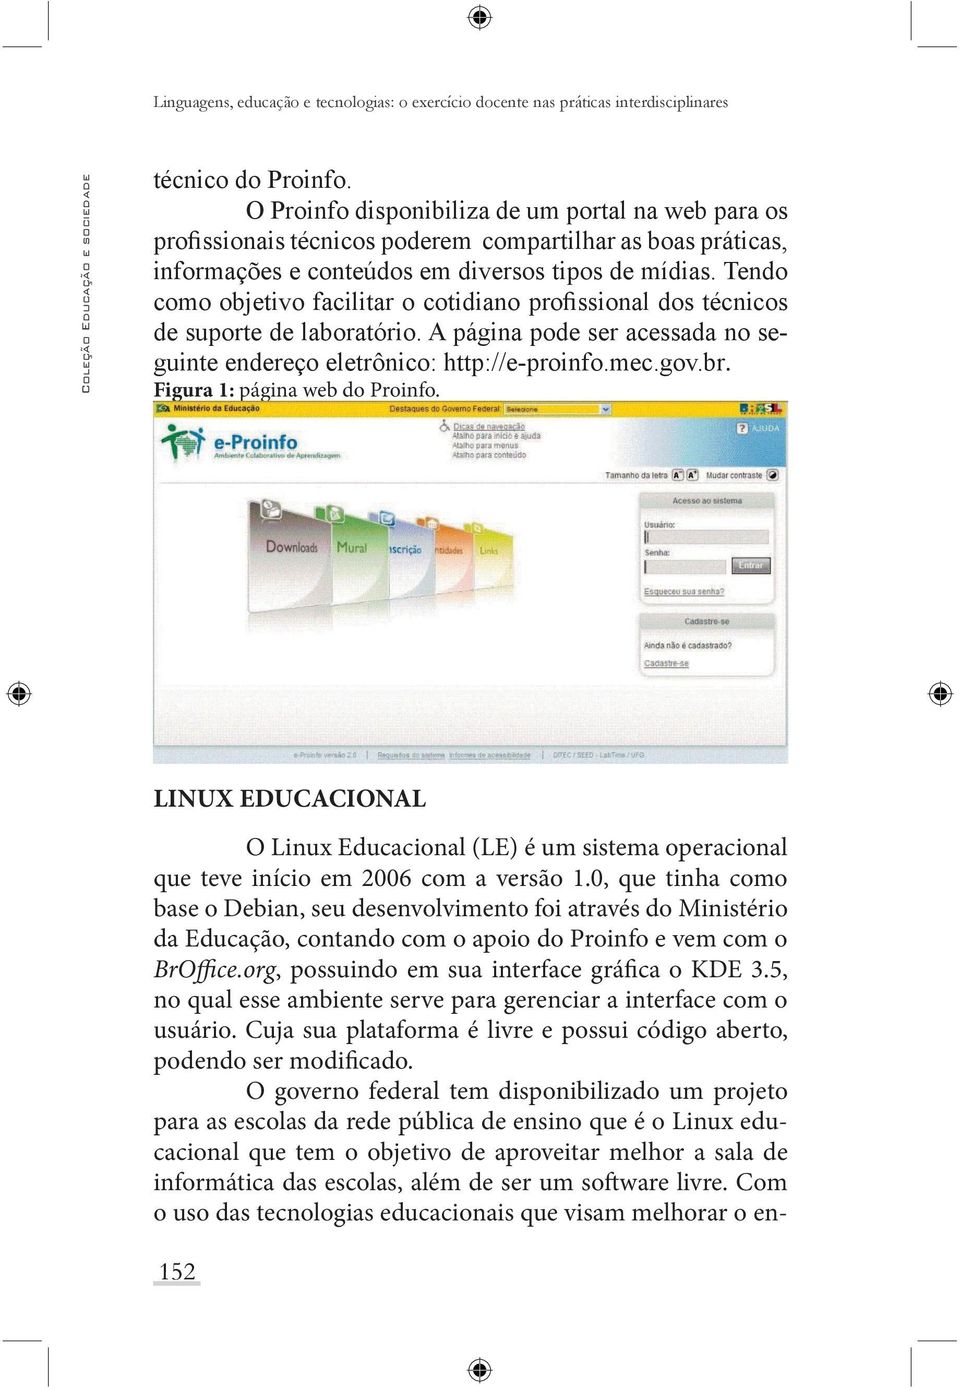 LINUX EDUCACIONAL O Linux Educacional (LE) é um sistema operacional que teve início em 2006 com a versão 1.